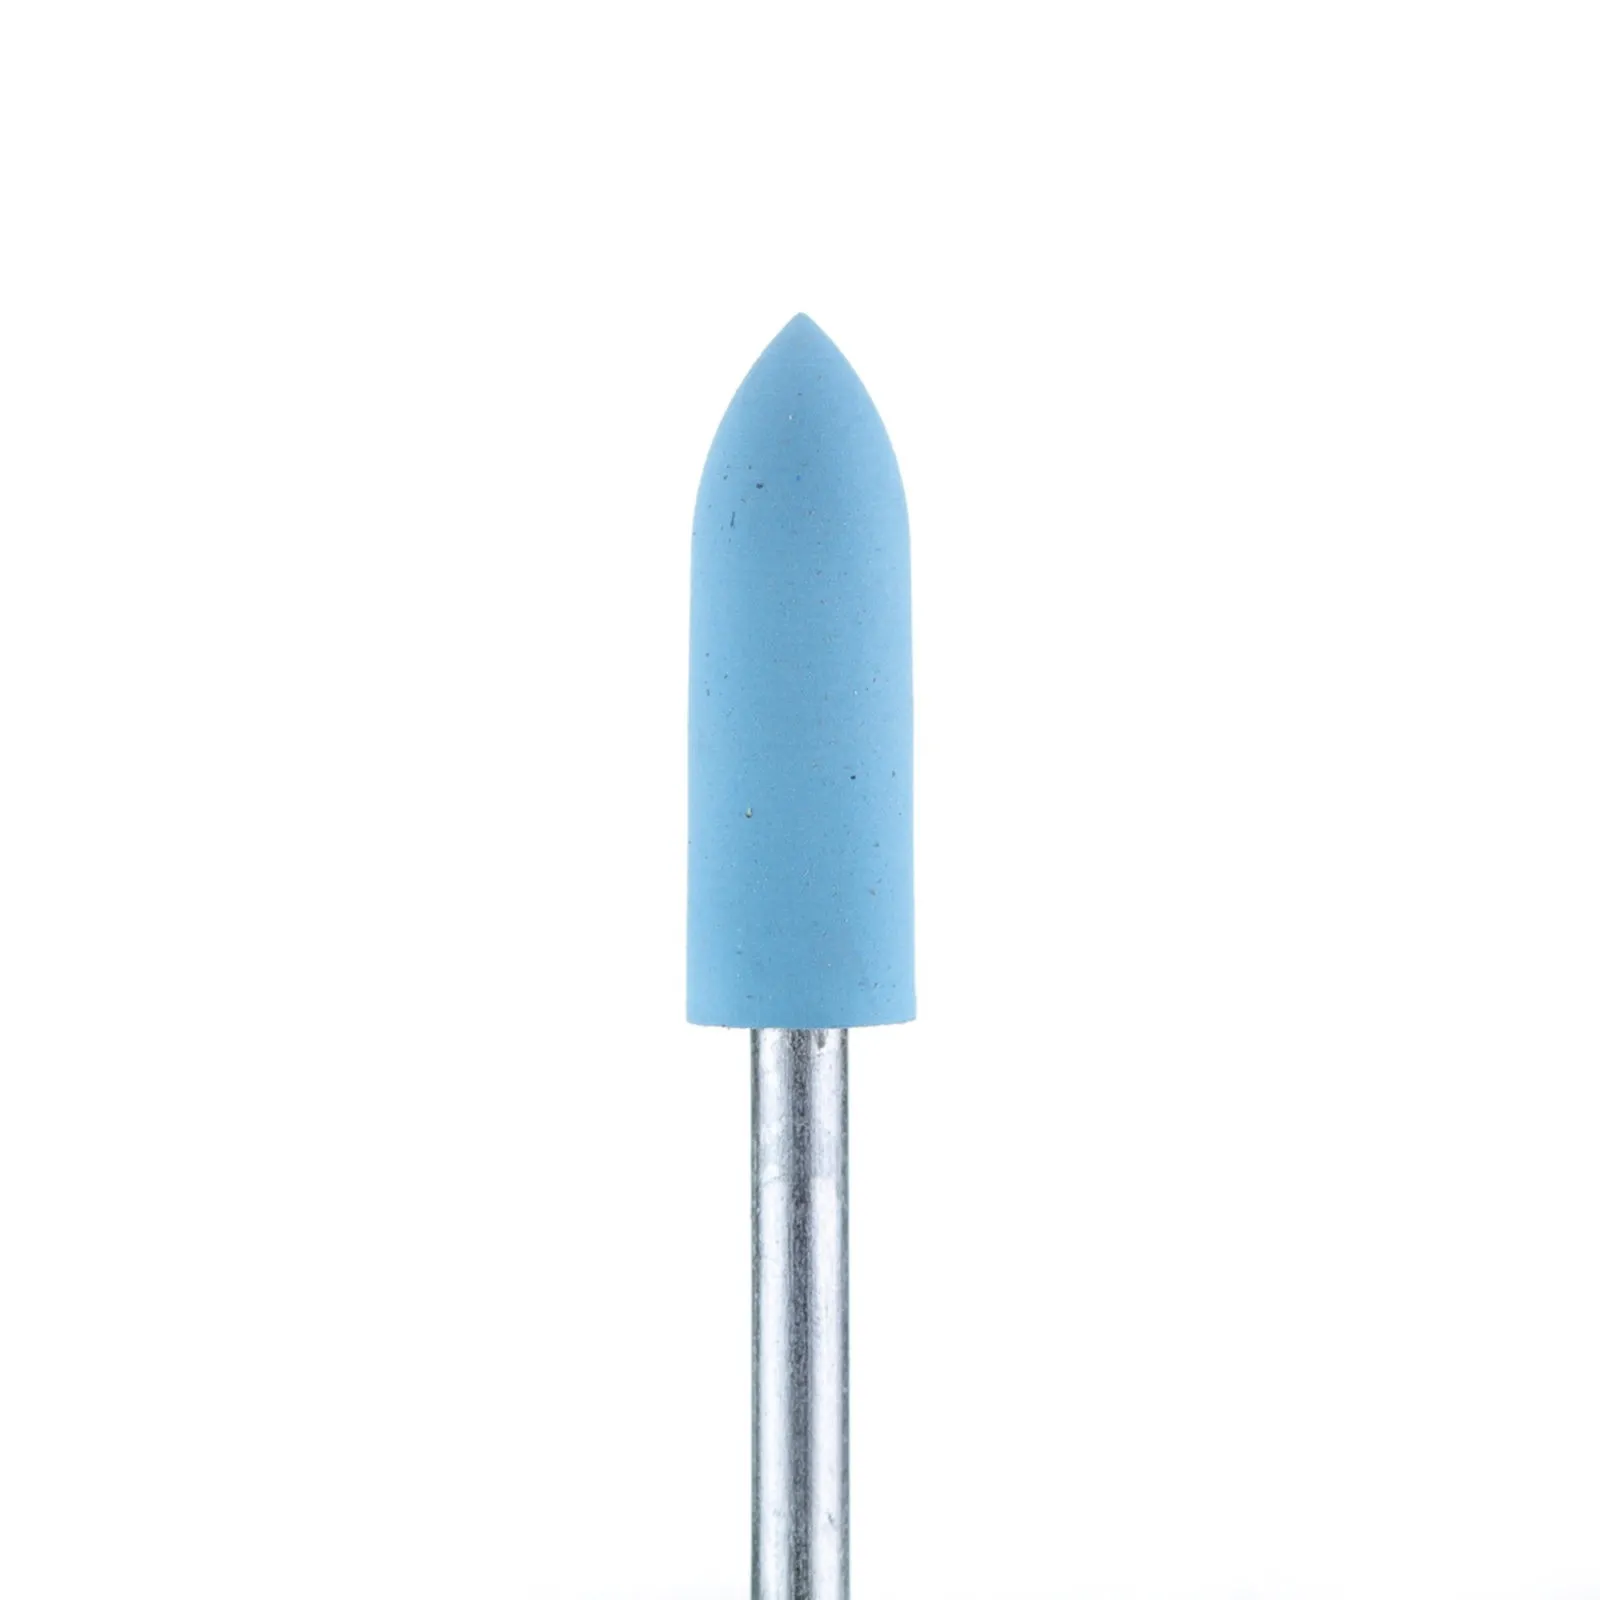 Полировщик закругленный цилиндр силиконовый голубой (диаметр 5 мм)